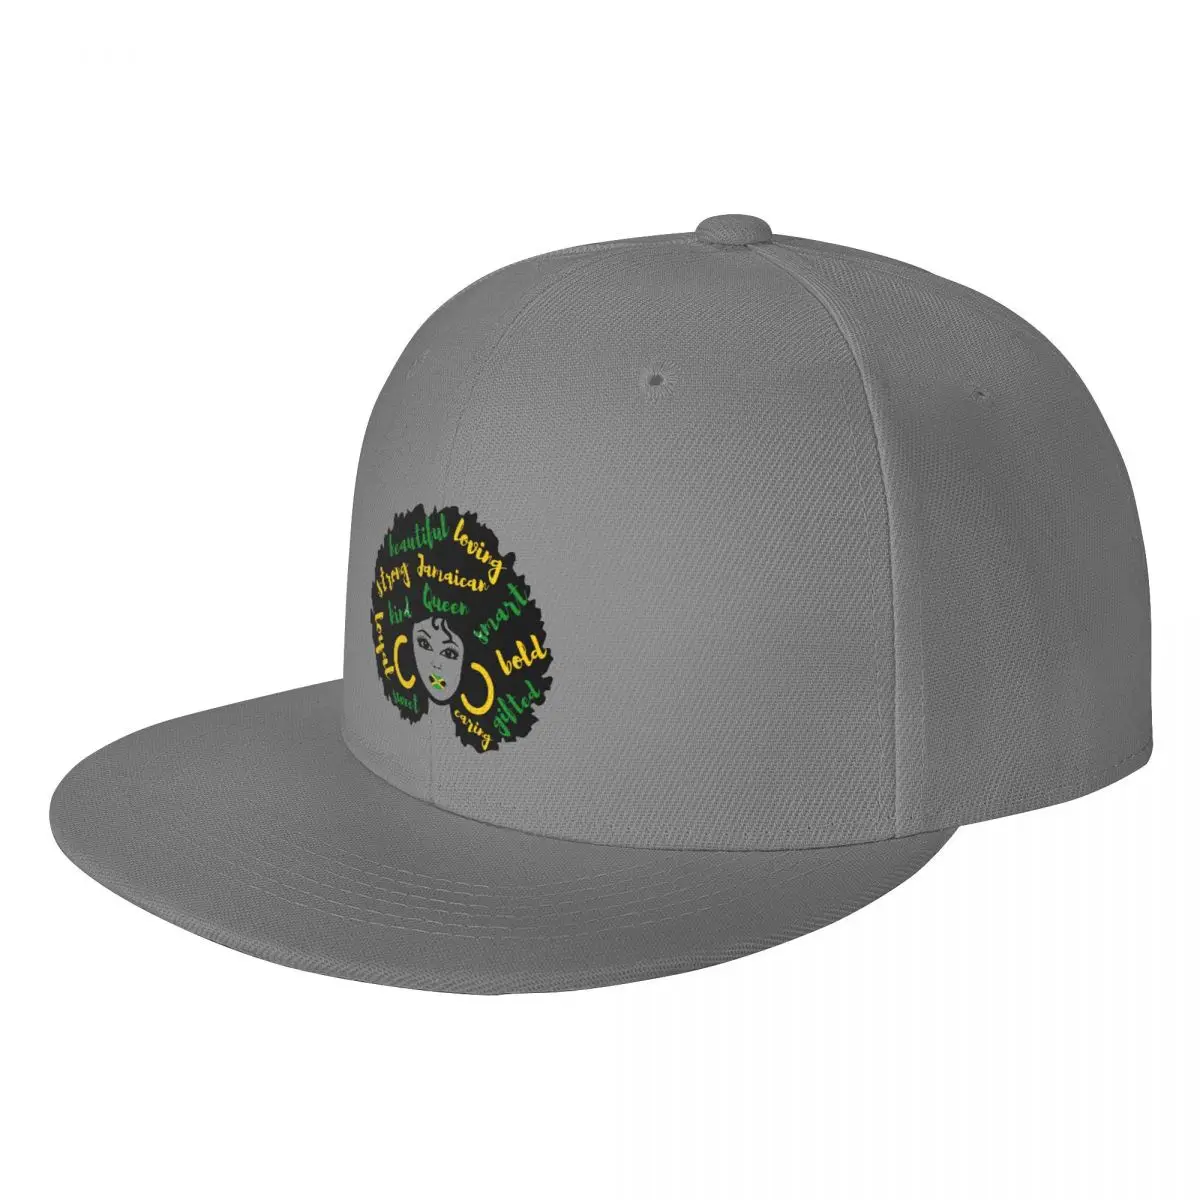 

Jamaica афро гордость плоская шляпа, бейсболка на заказ для взрослых, для путешествий, хороший подарок